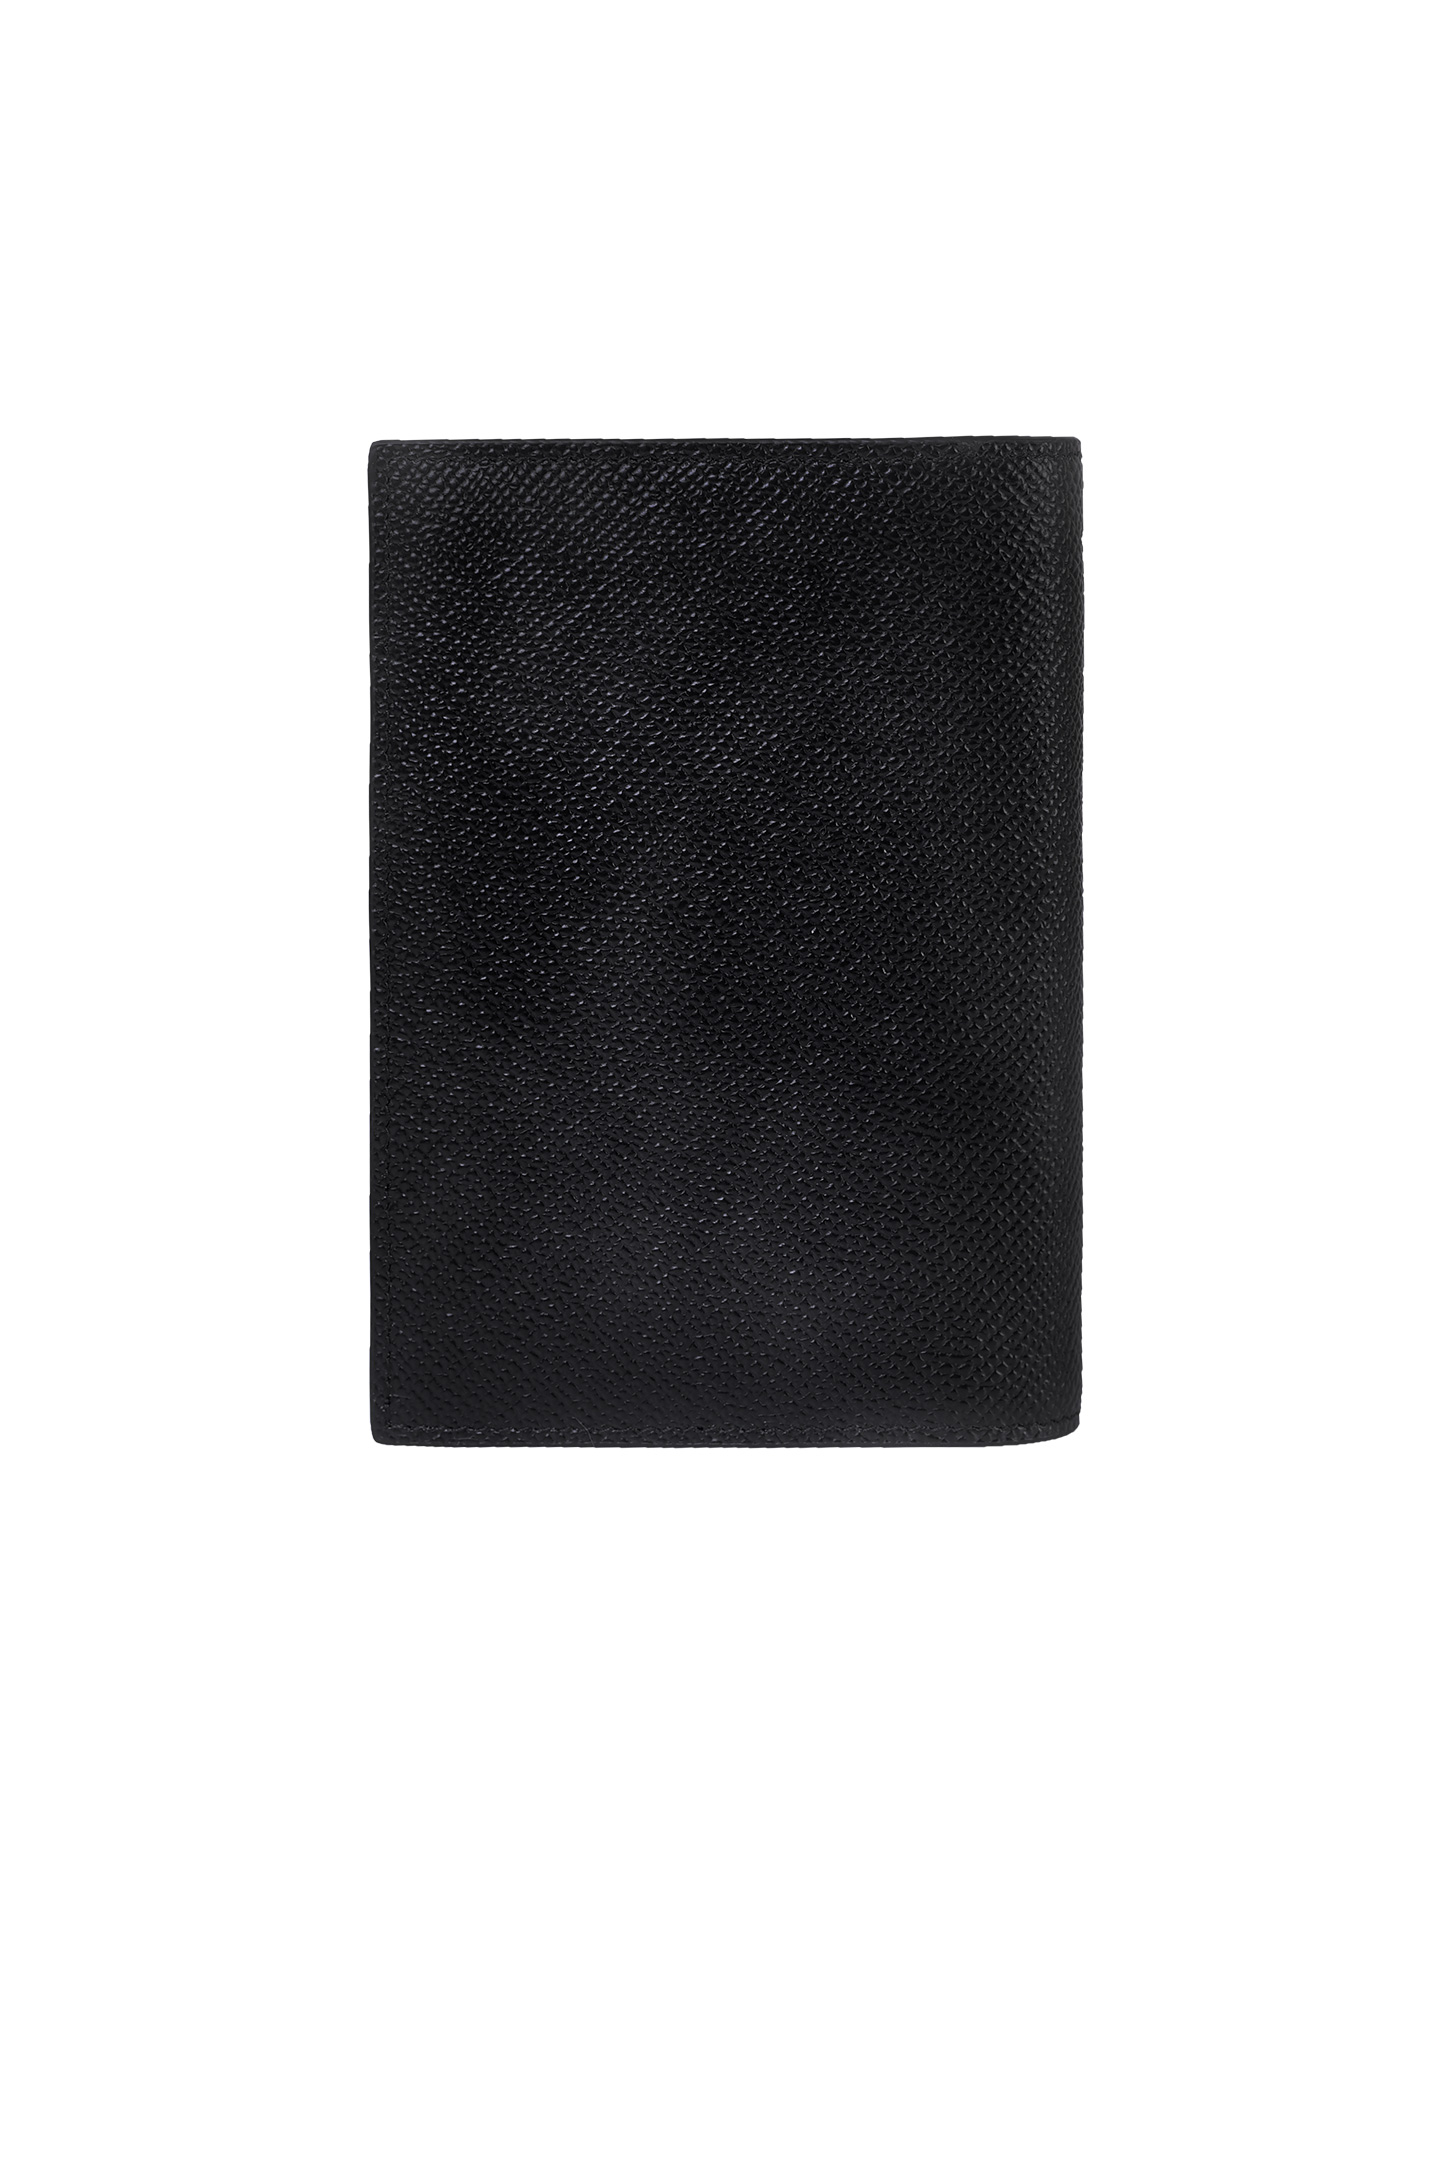 Обложка для паспорта DOLCE & GABBANA BP2215 AZ602, цвет: Черный, Мужской